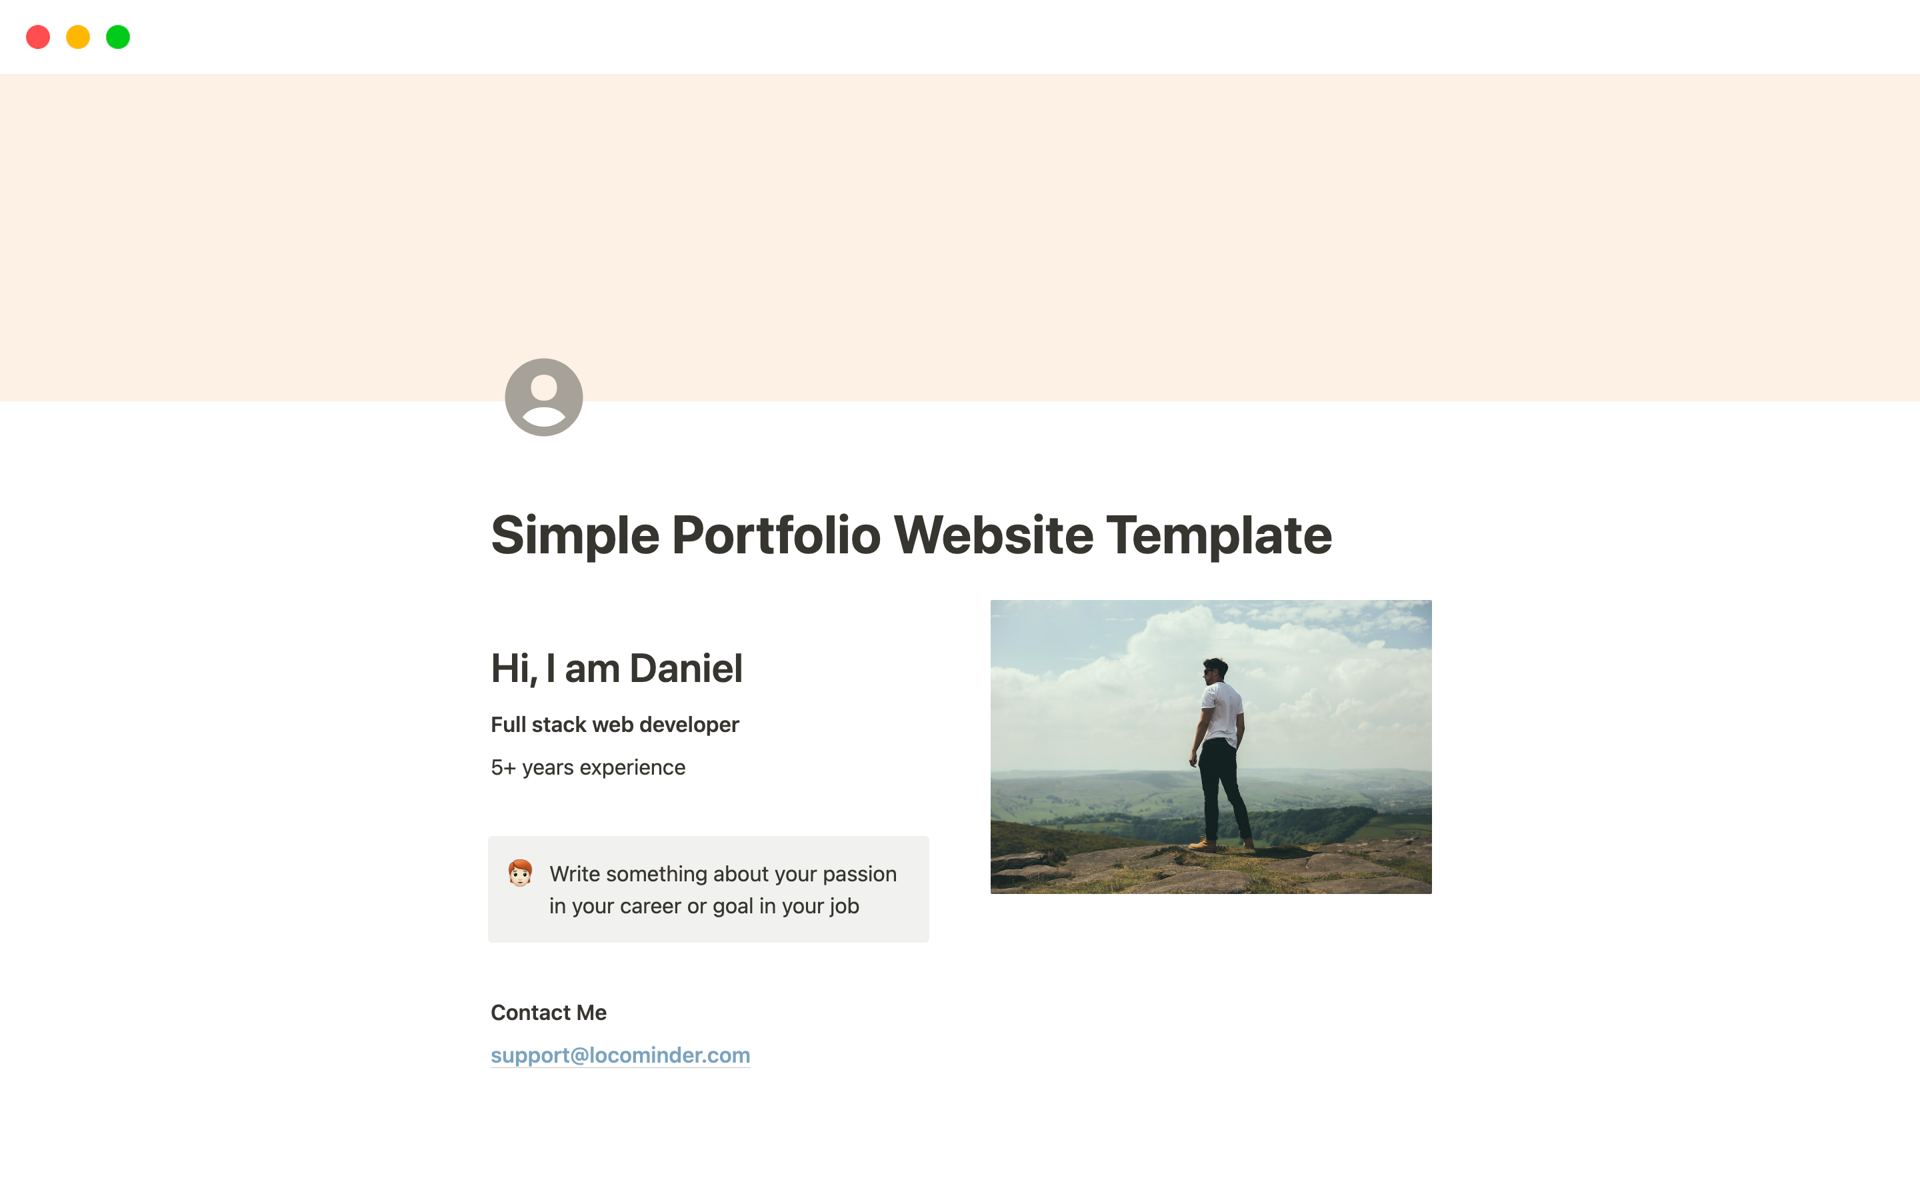 Uma prévia do modelo para Simple Portfolio Website